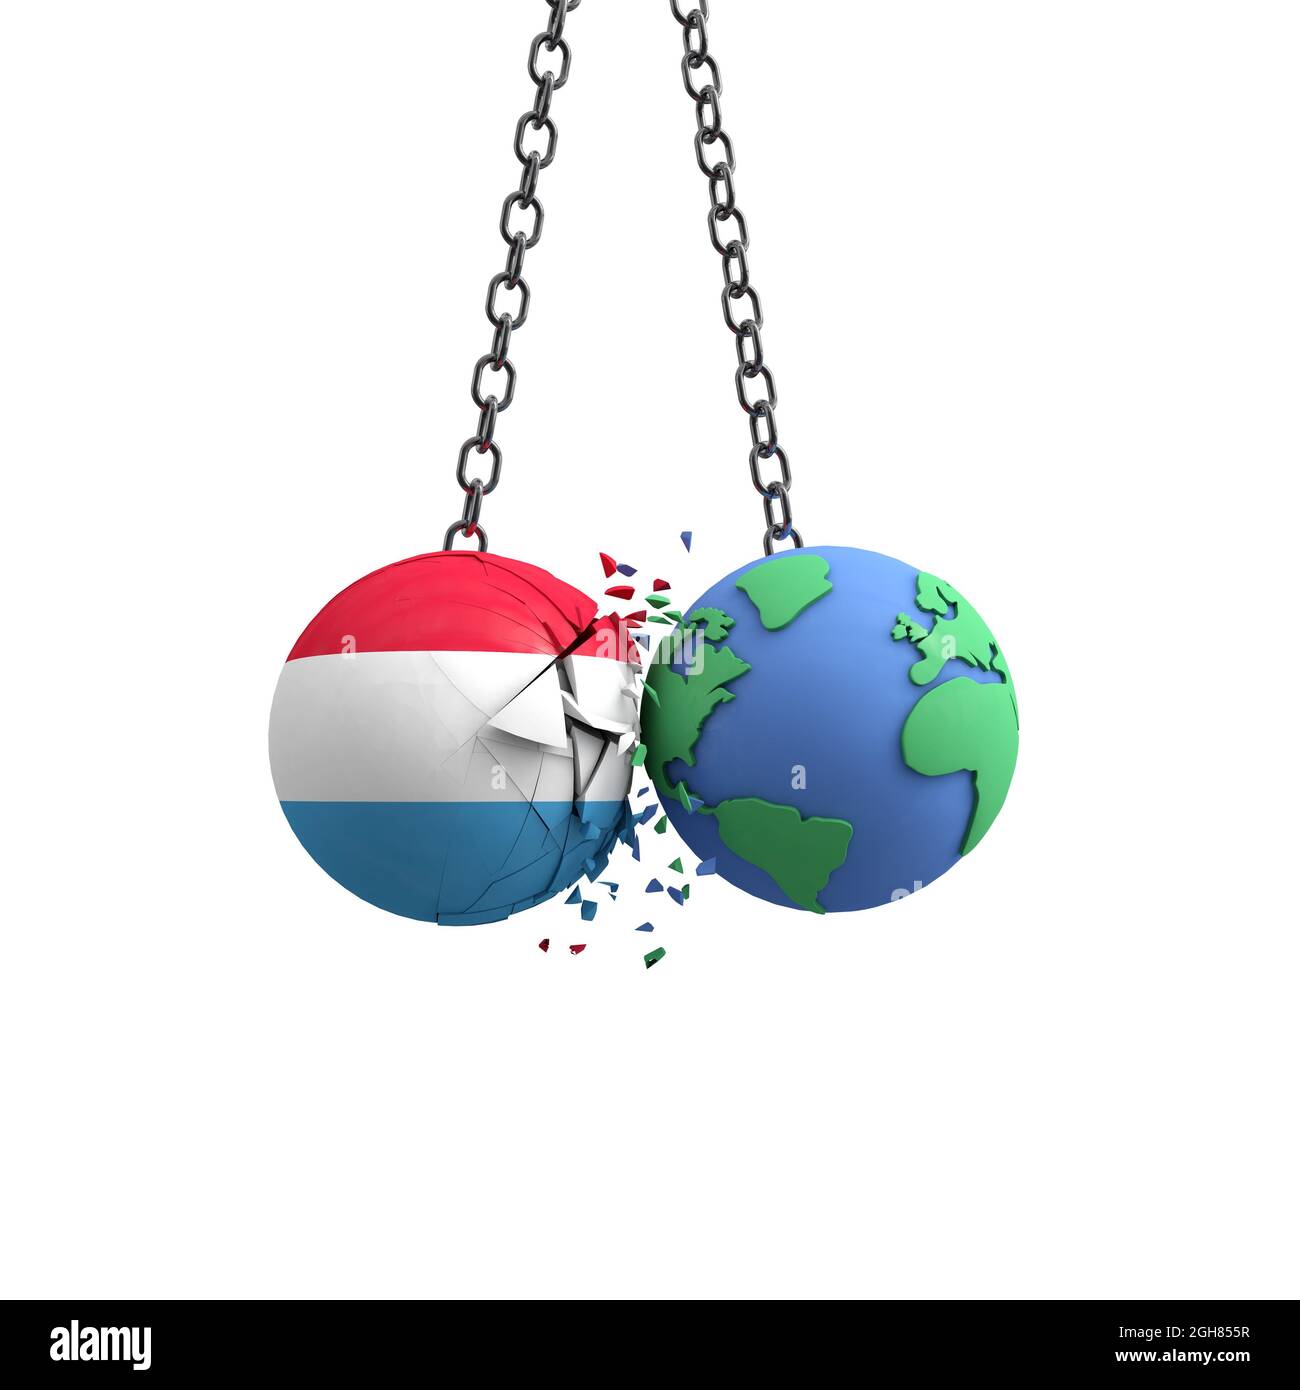 Le drapeau du Luxembourg touche la planète Terre. Concept d'impact sur l'environnement. Rendu 3D Banque D'Images